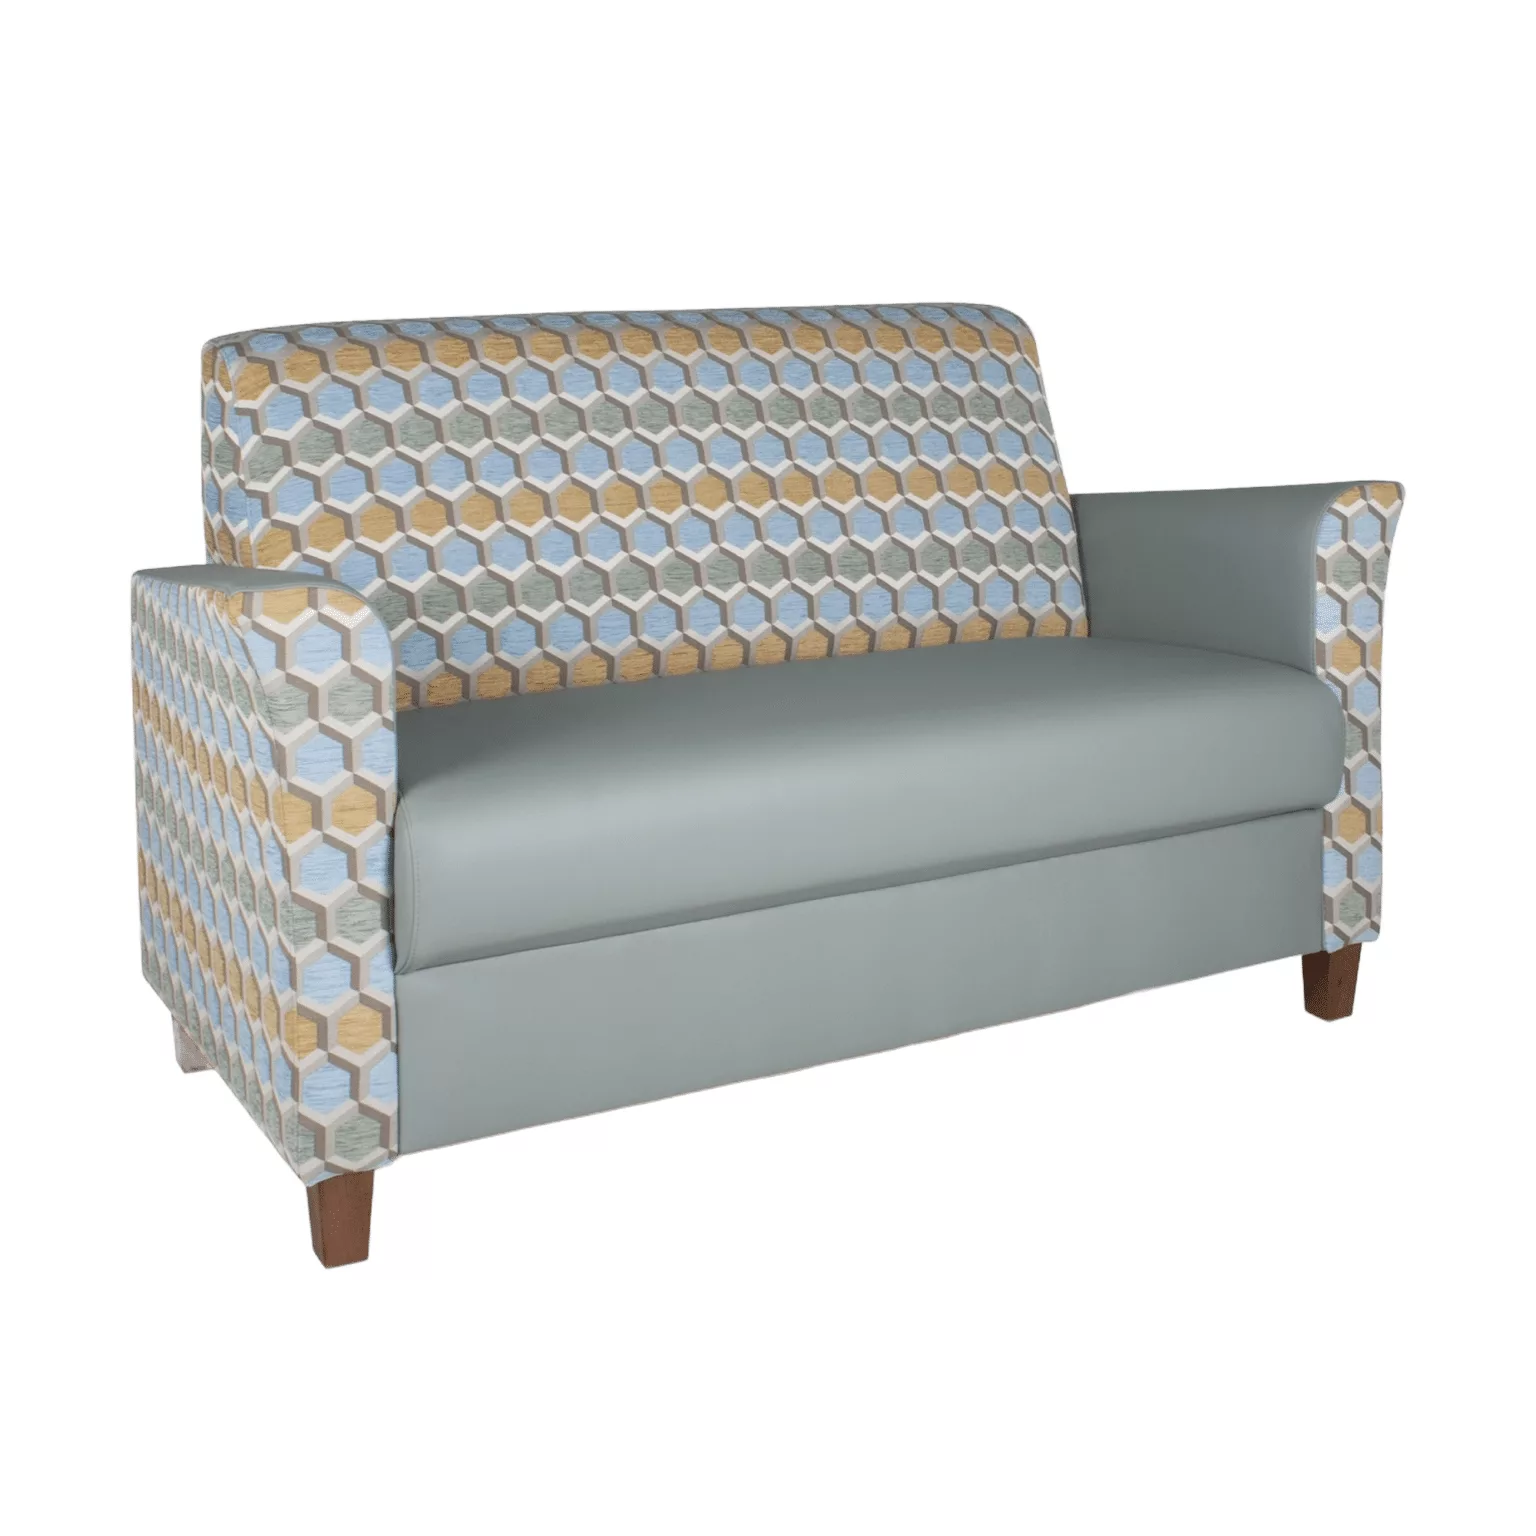 Blauwe loungebank met een zeshoekpatroon op houten meubelpoten.